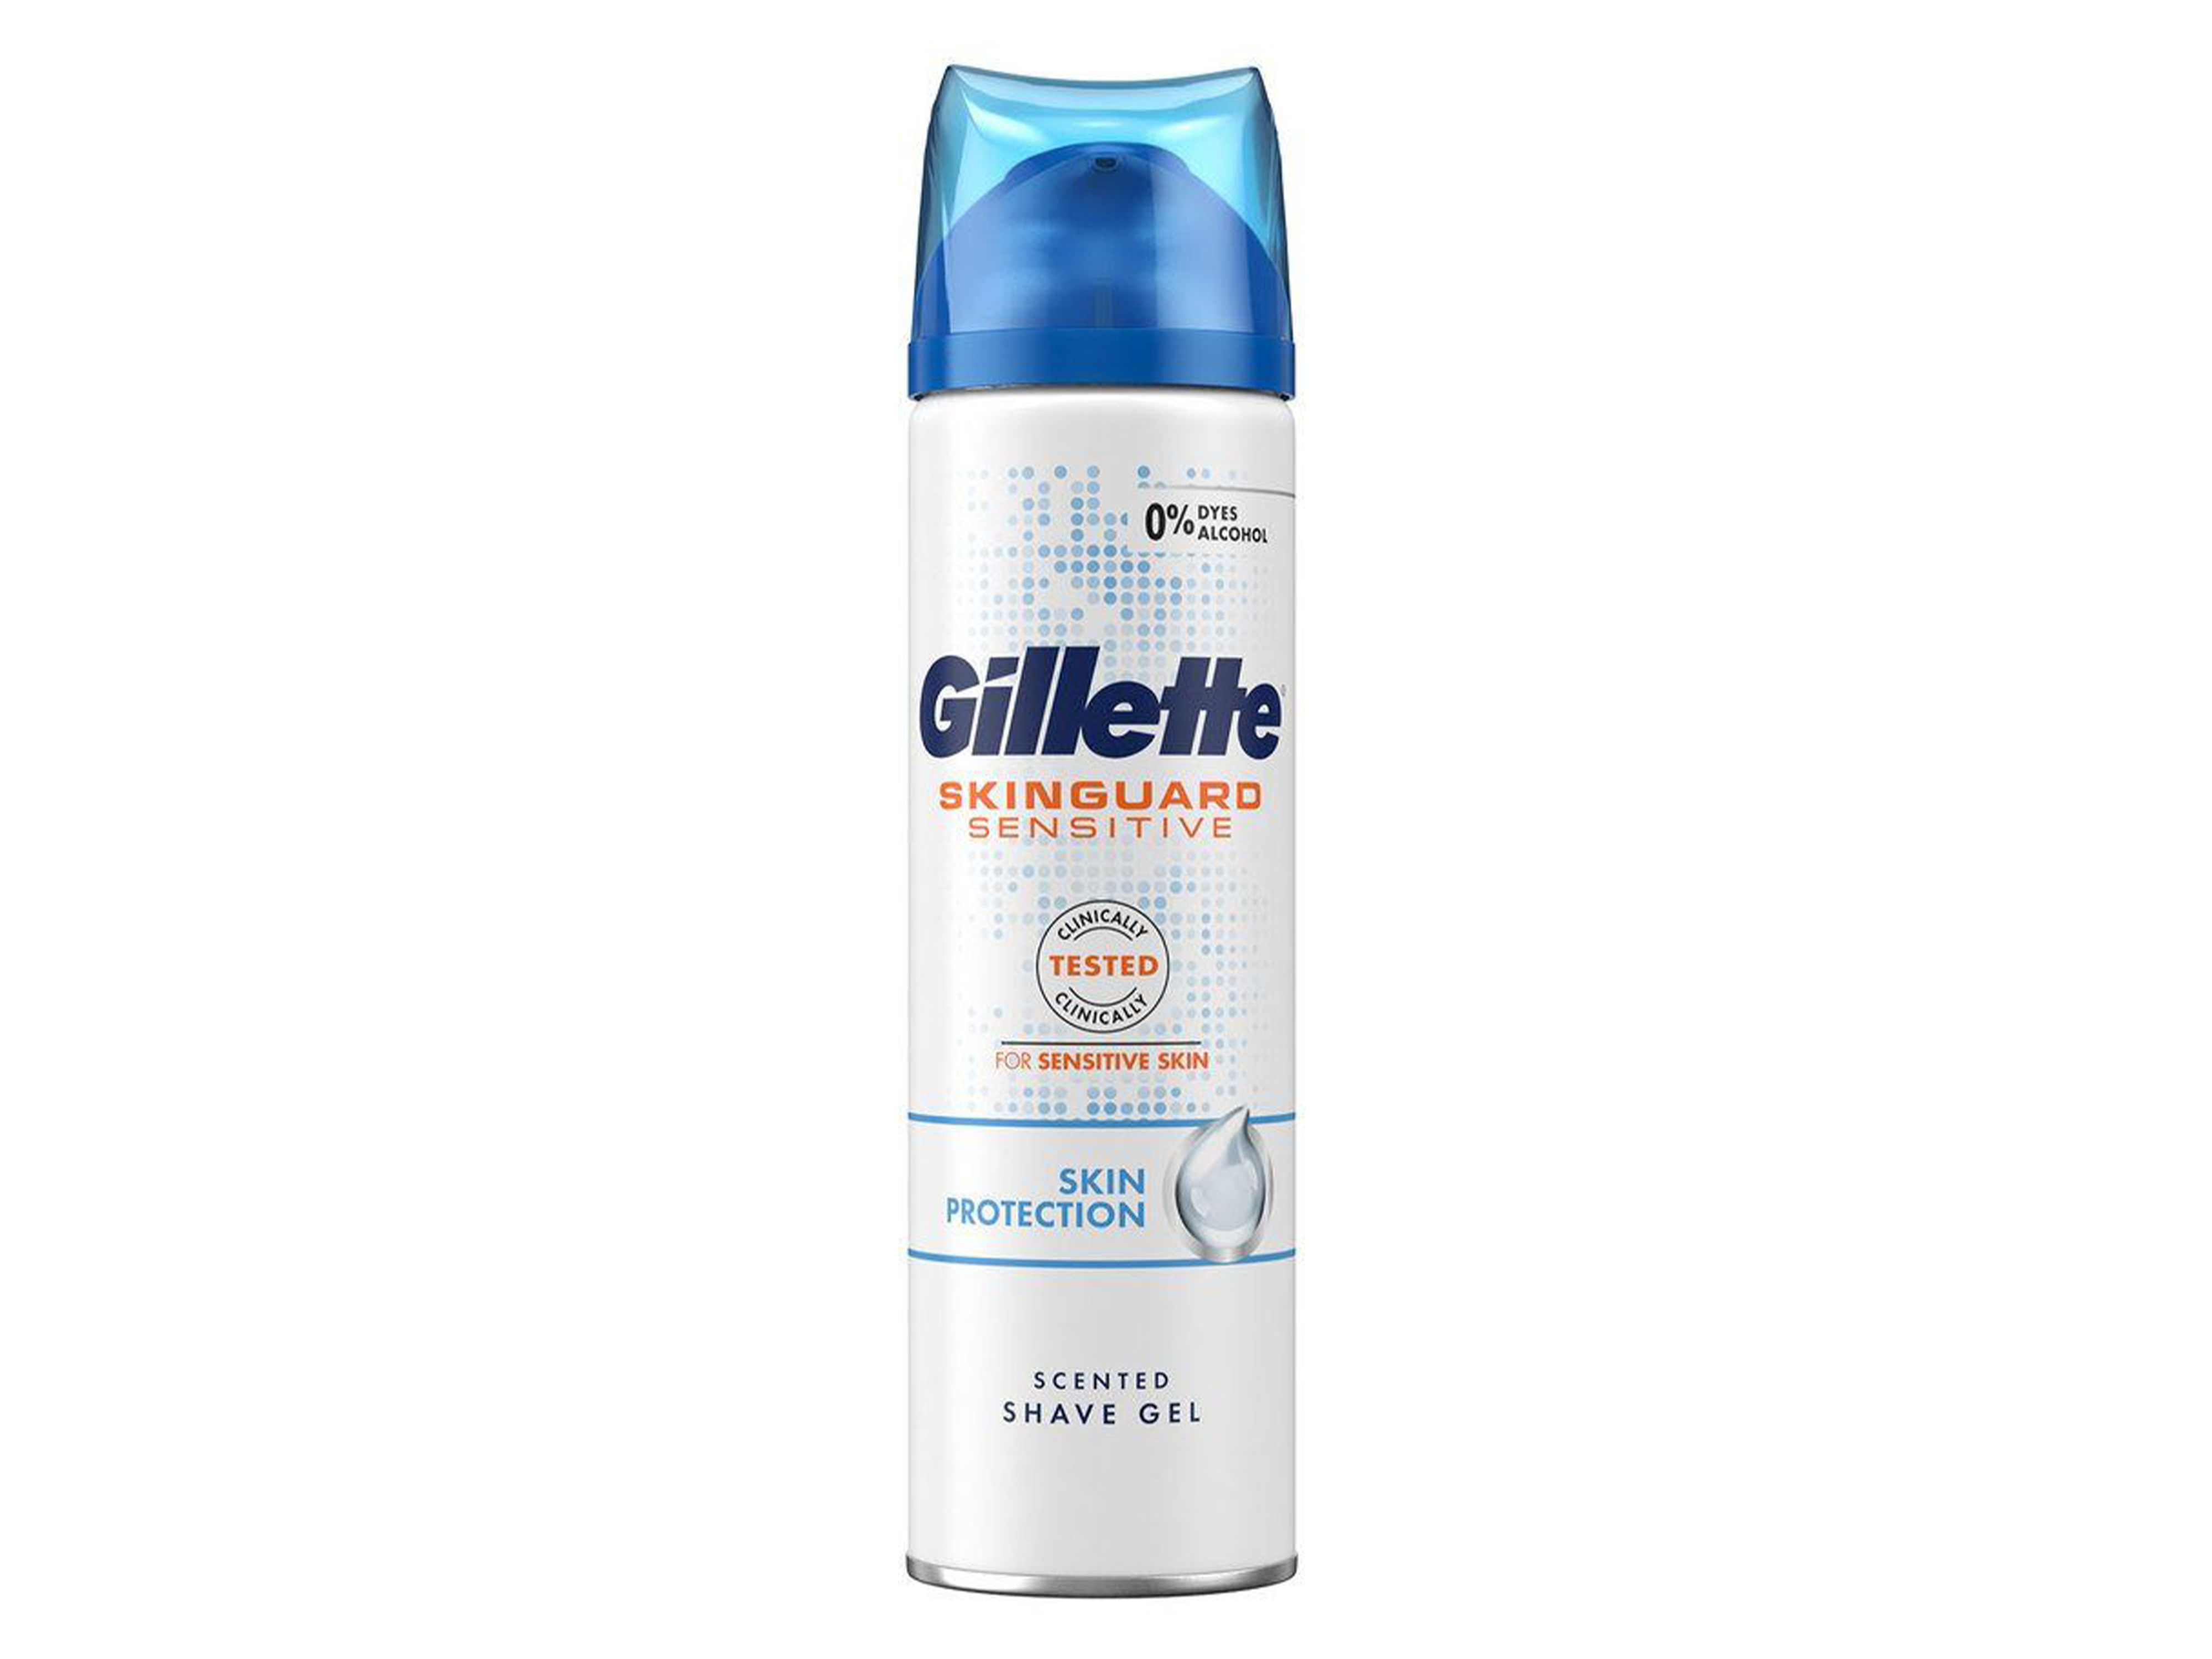 Gillette Skinguard Sensitive barbergel, 200 ml